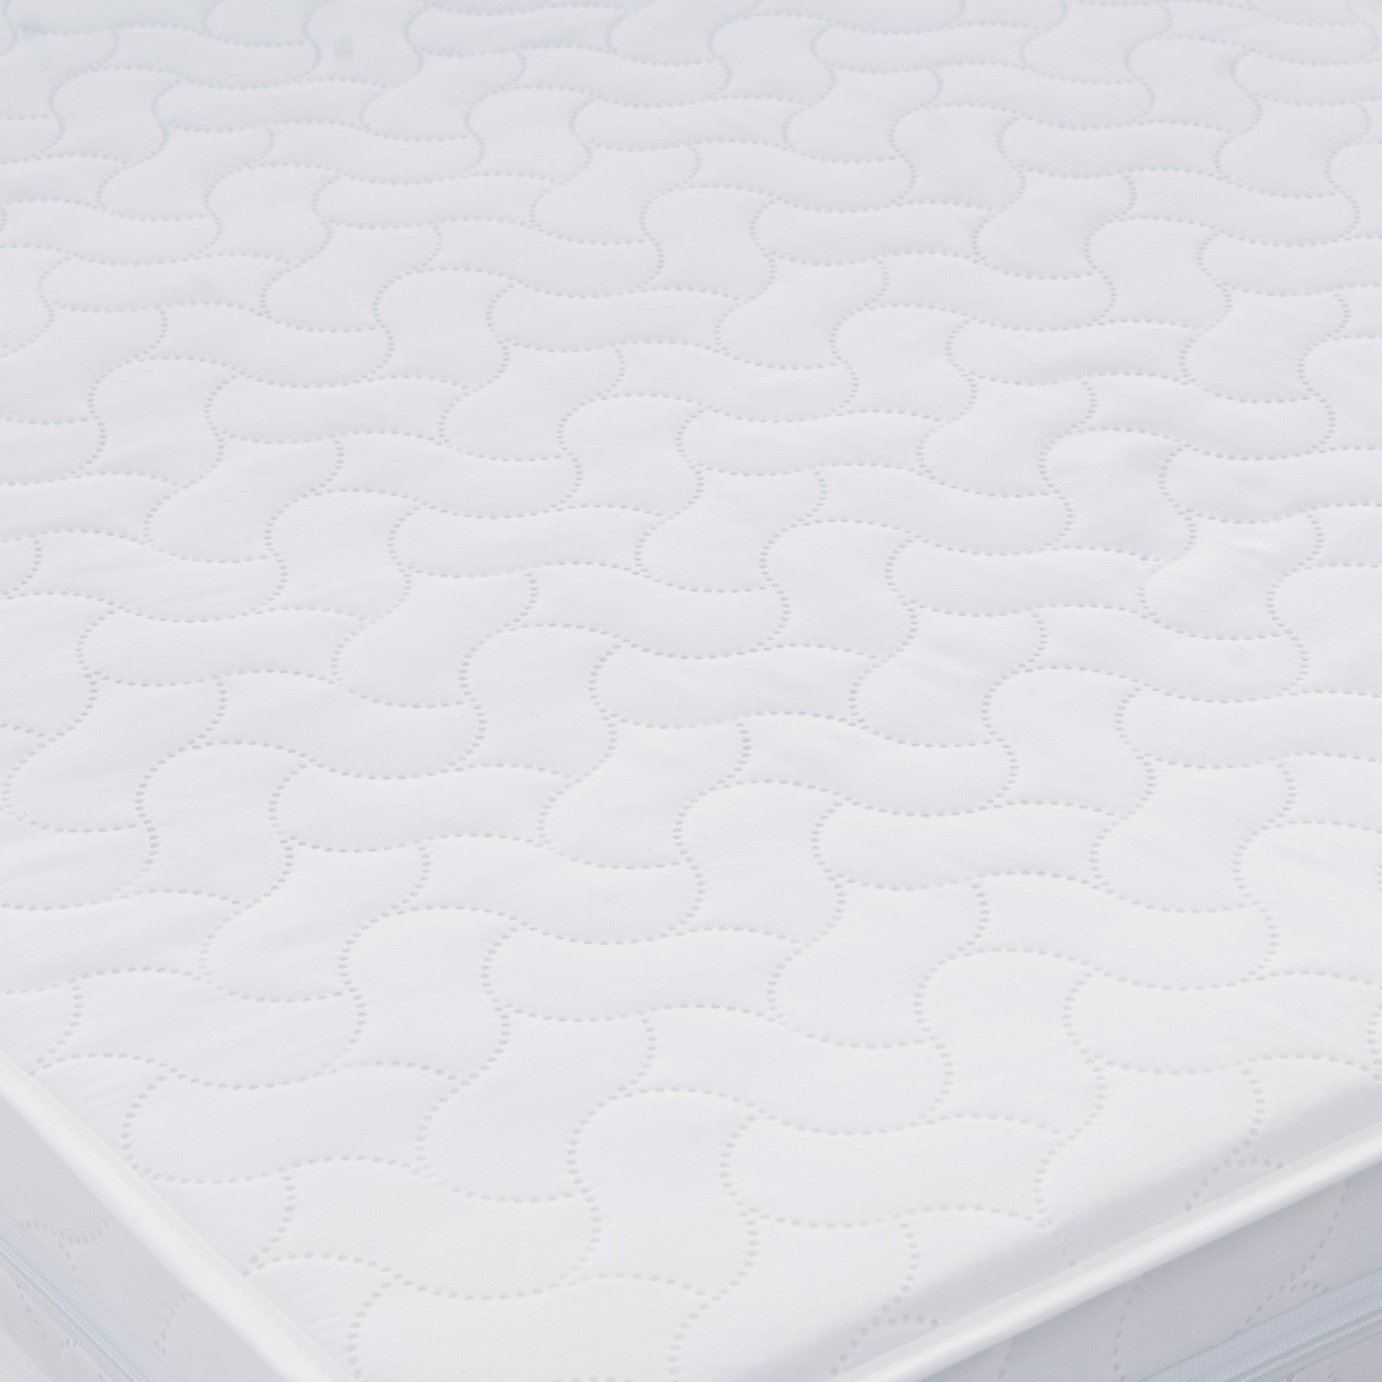 Babyhoot 140 x 70cm Pocket Sprung Cot Bed Mattress Review